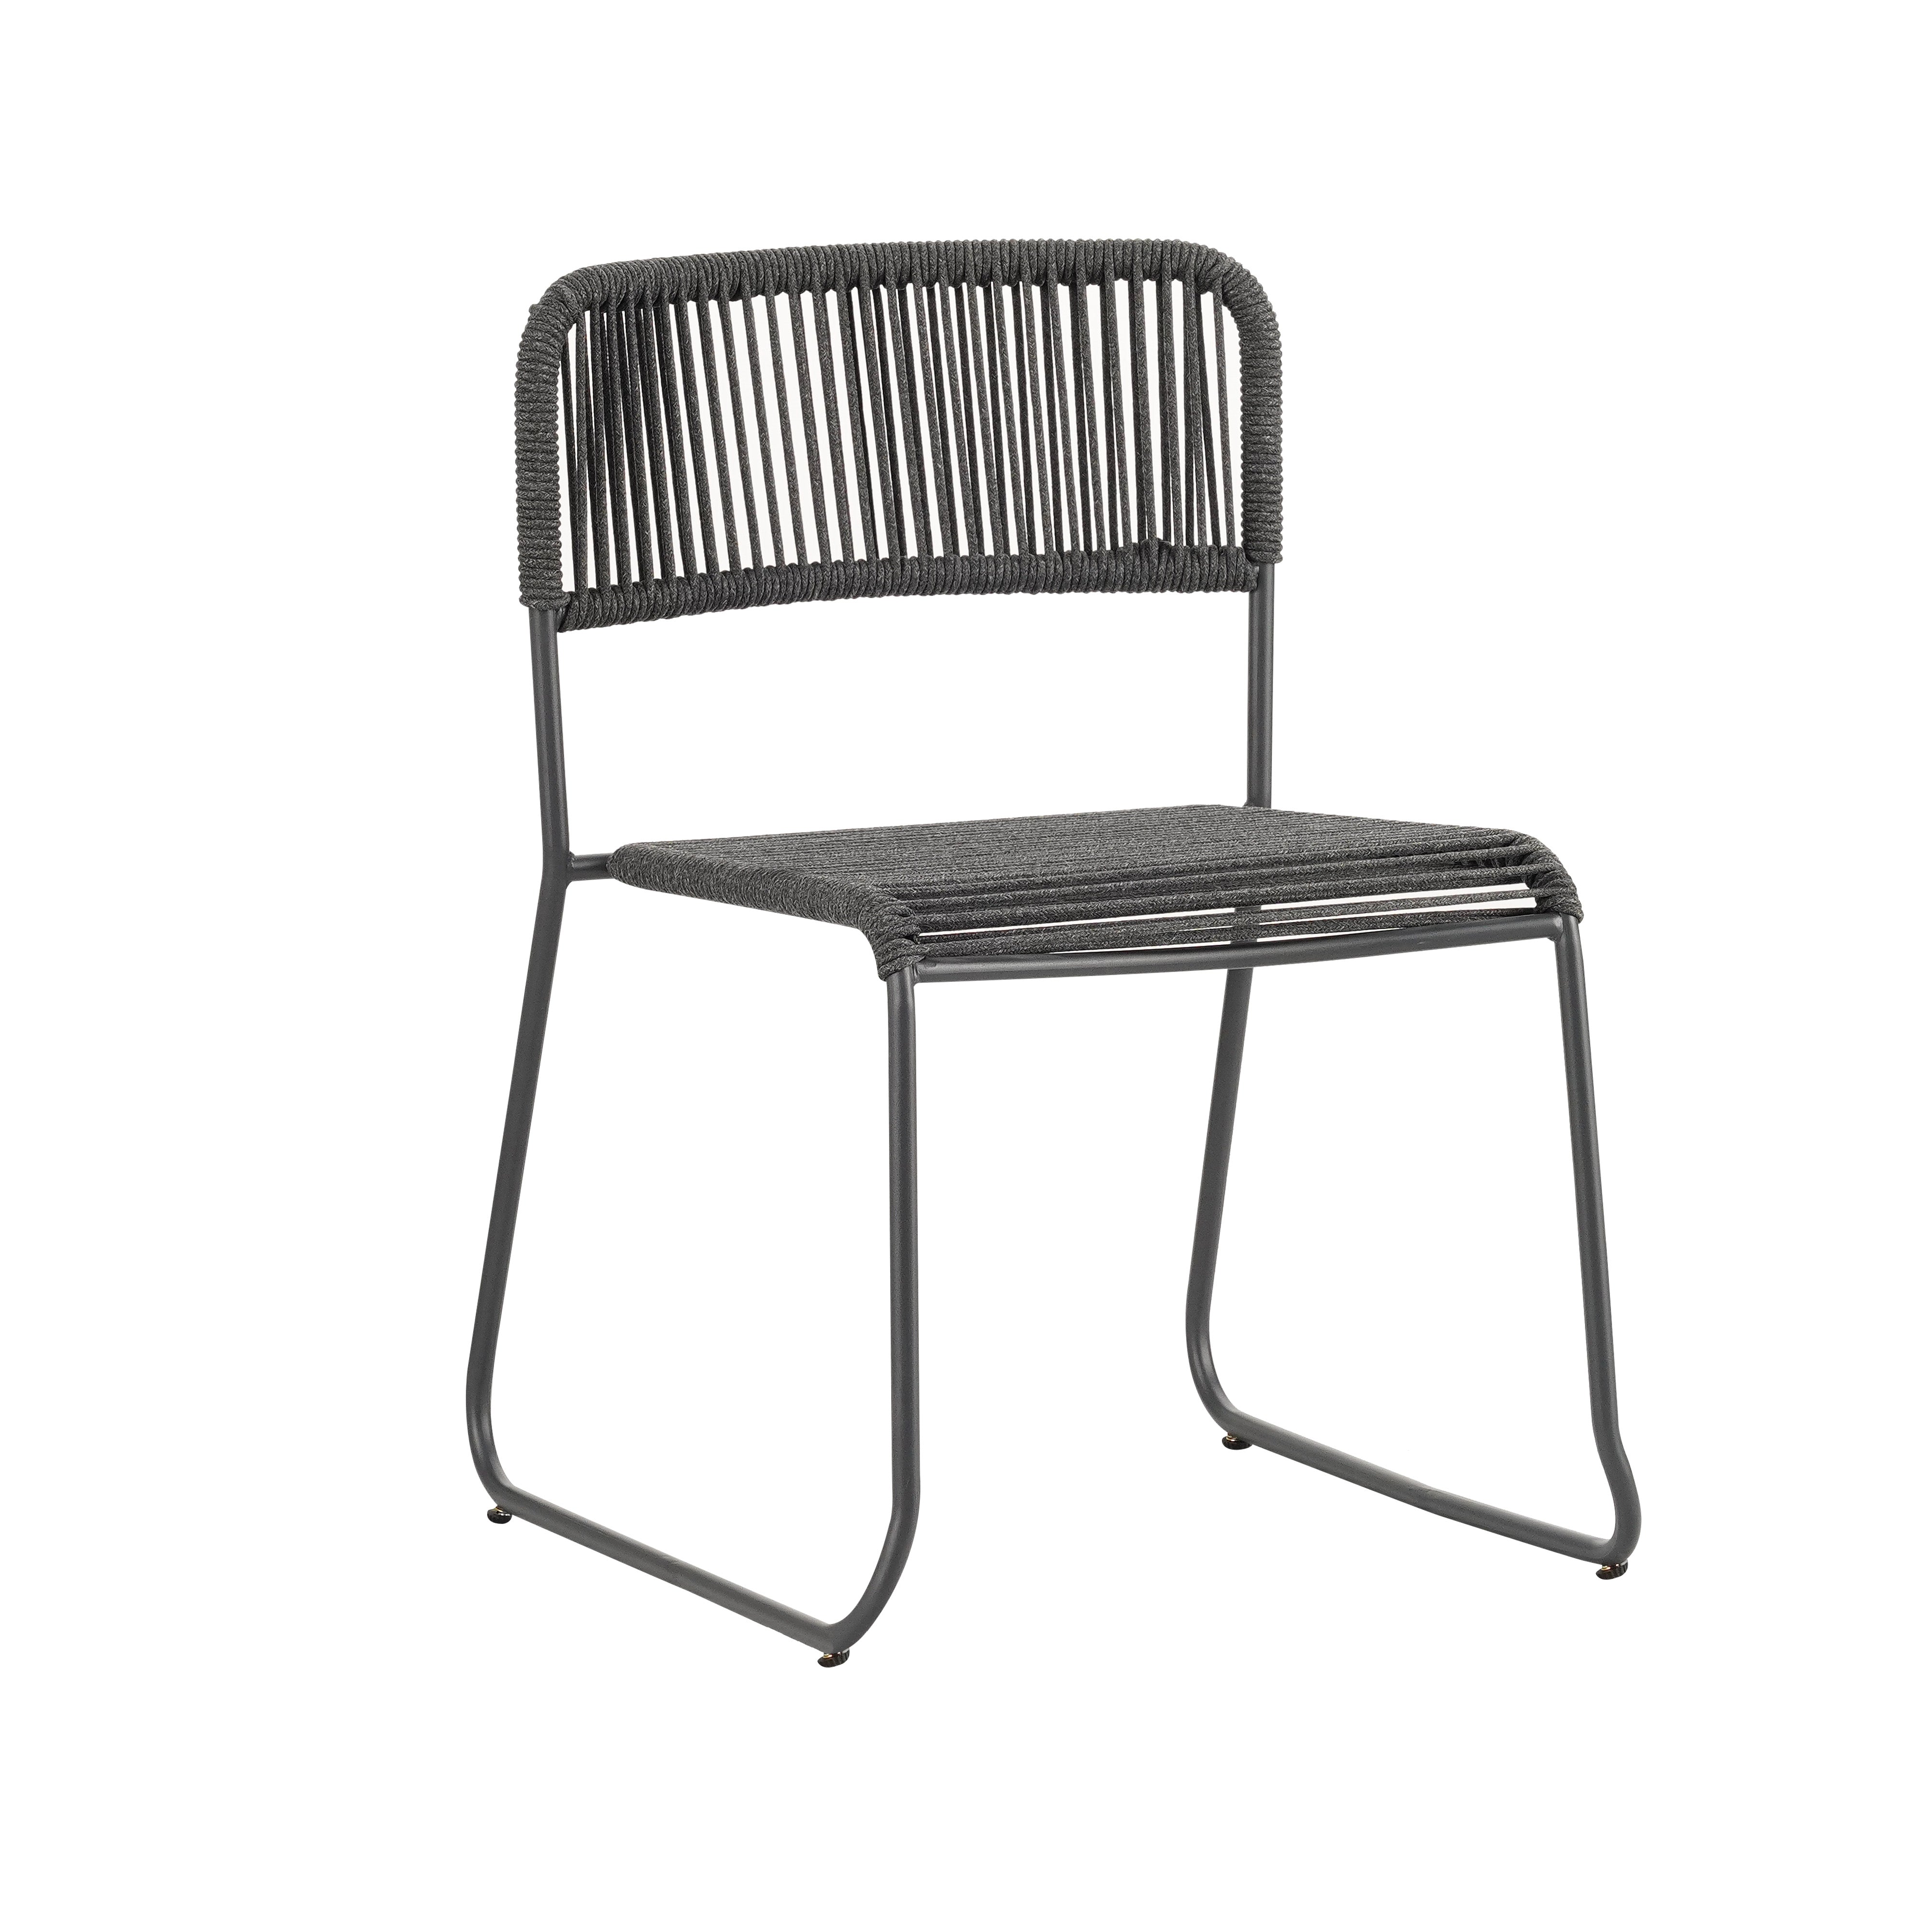 Vince Design Uden outdoor dining chair Top Merken Winkel